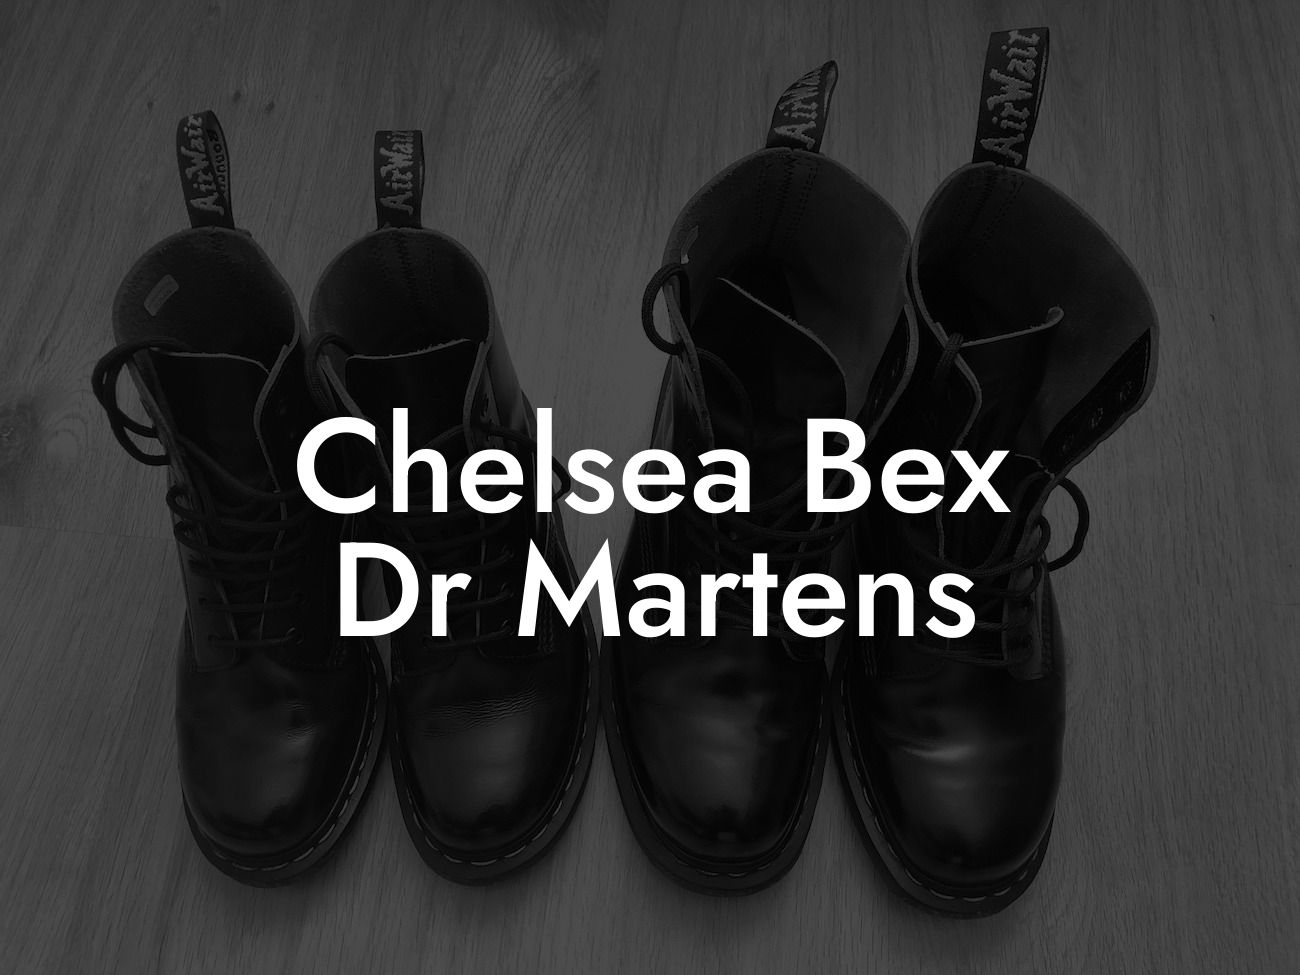 Chelsea Bex Dr Martens